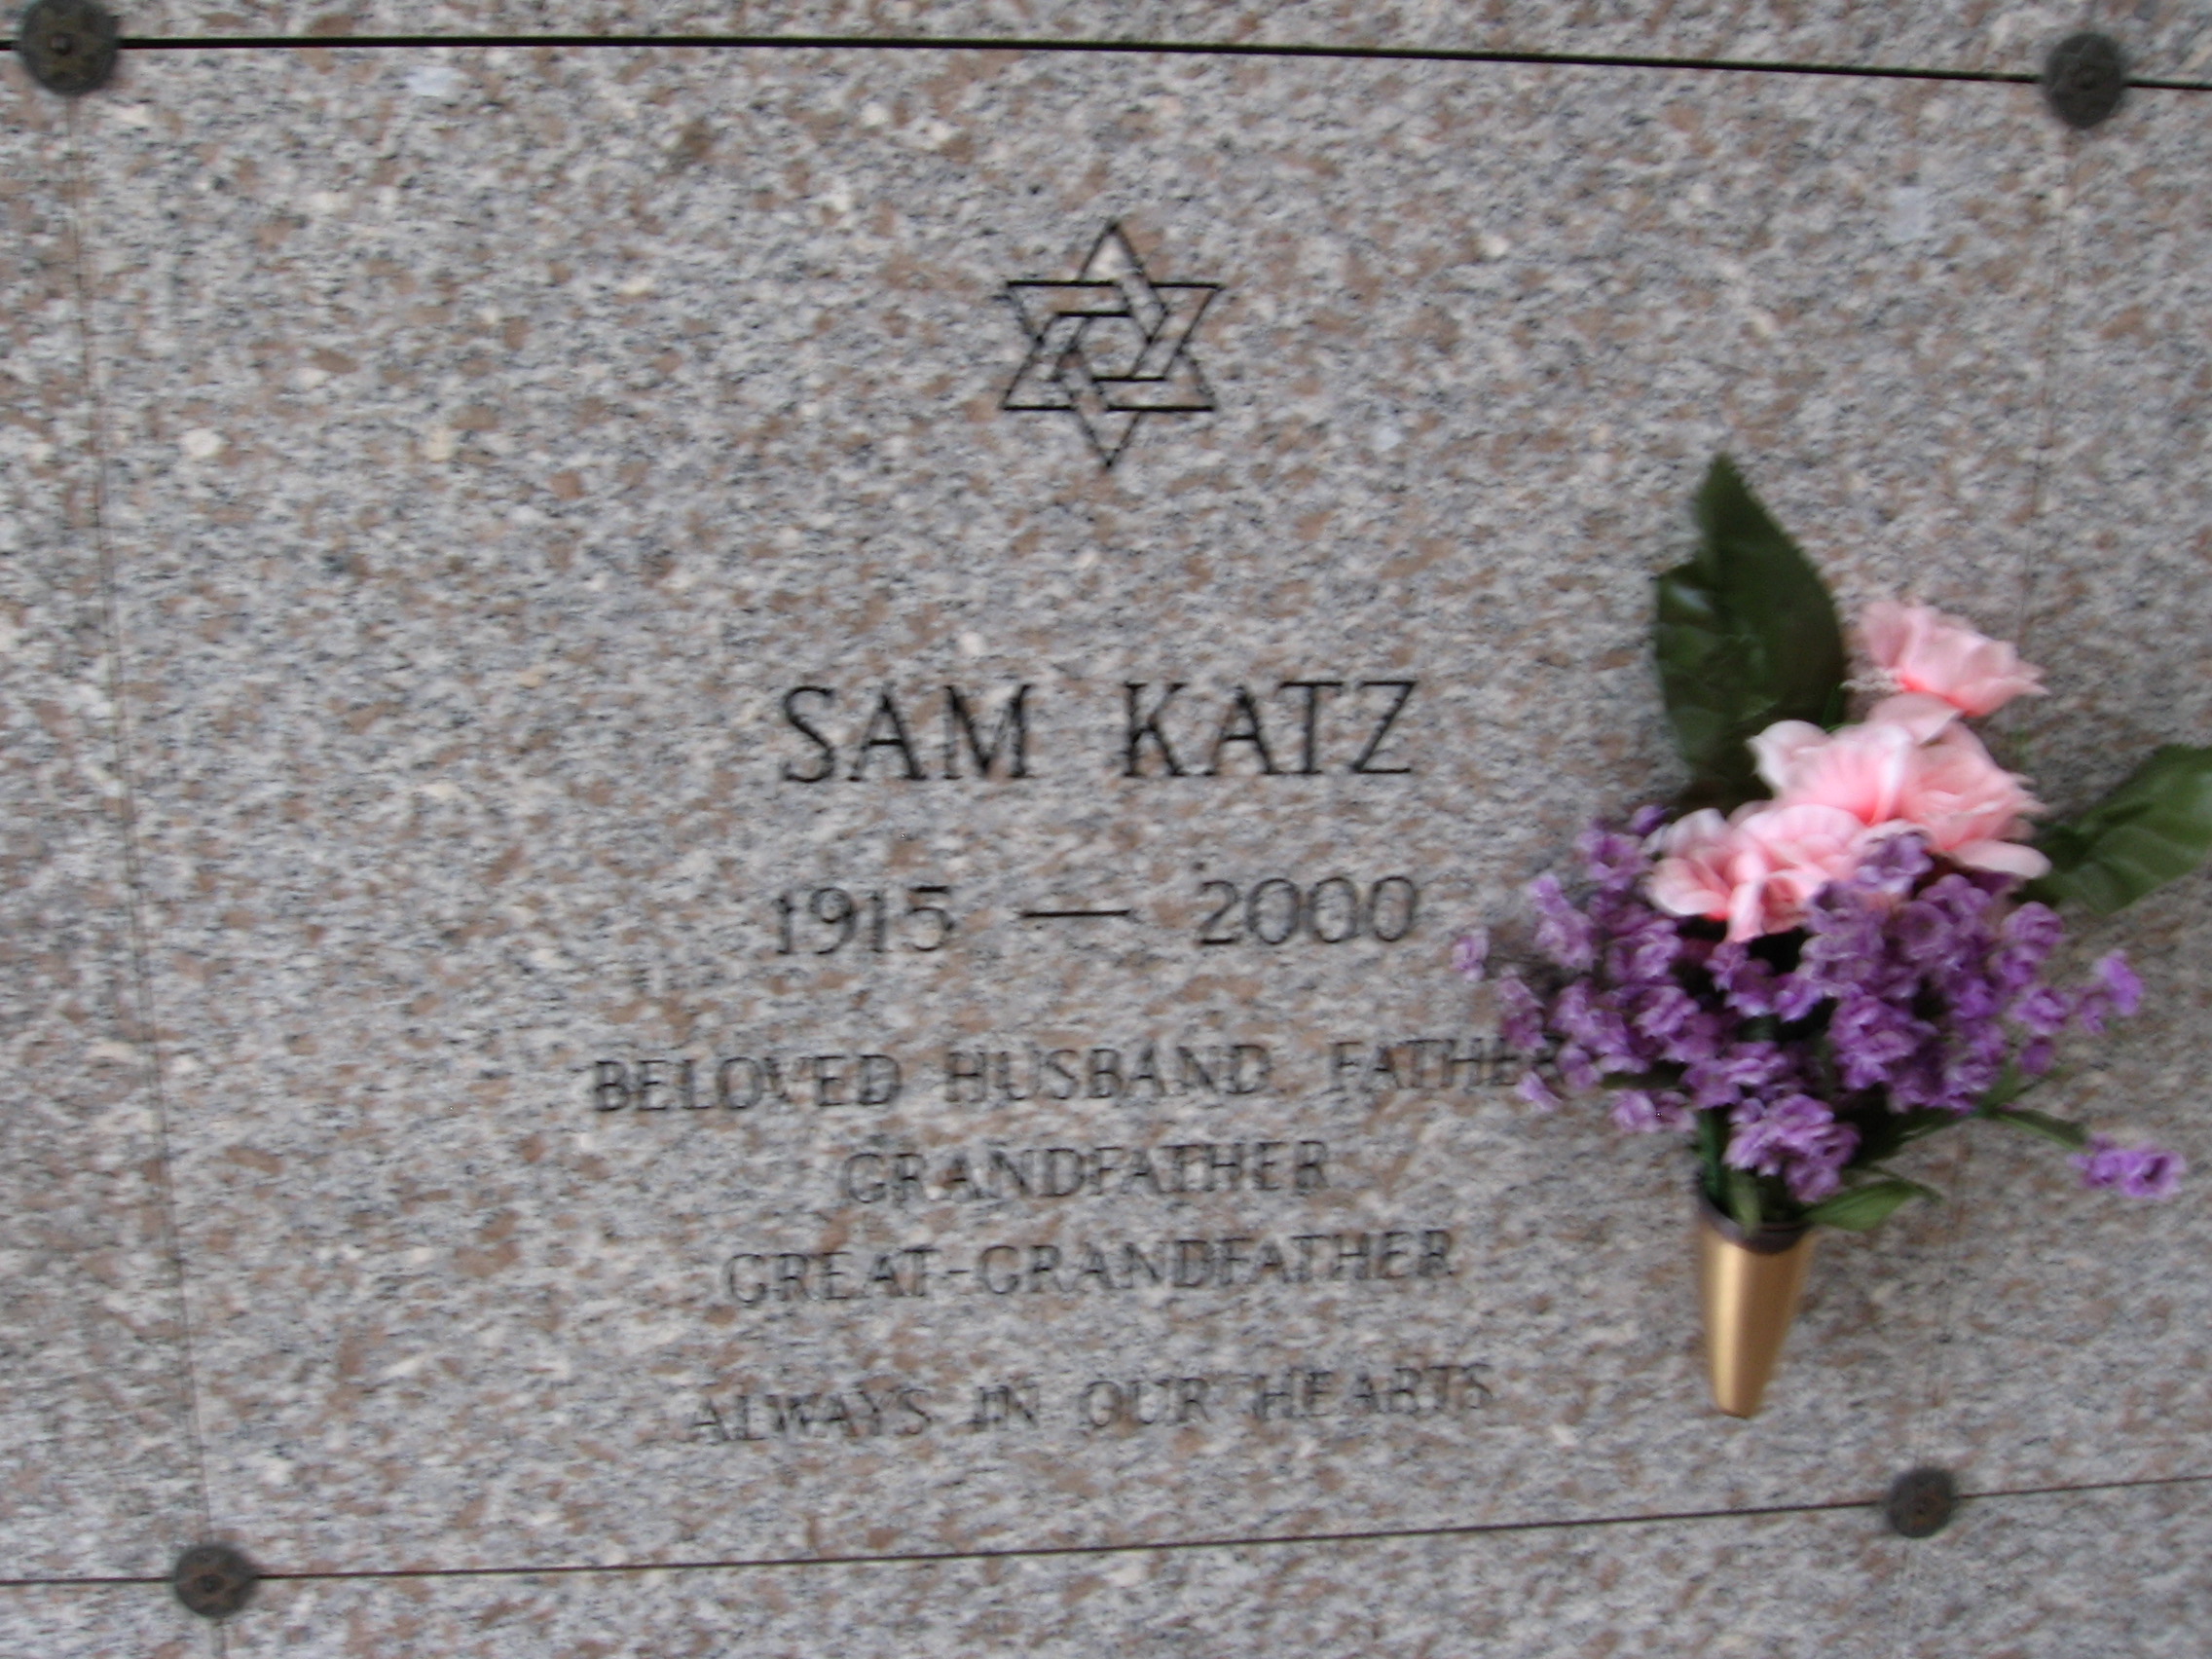 Sam Katz